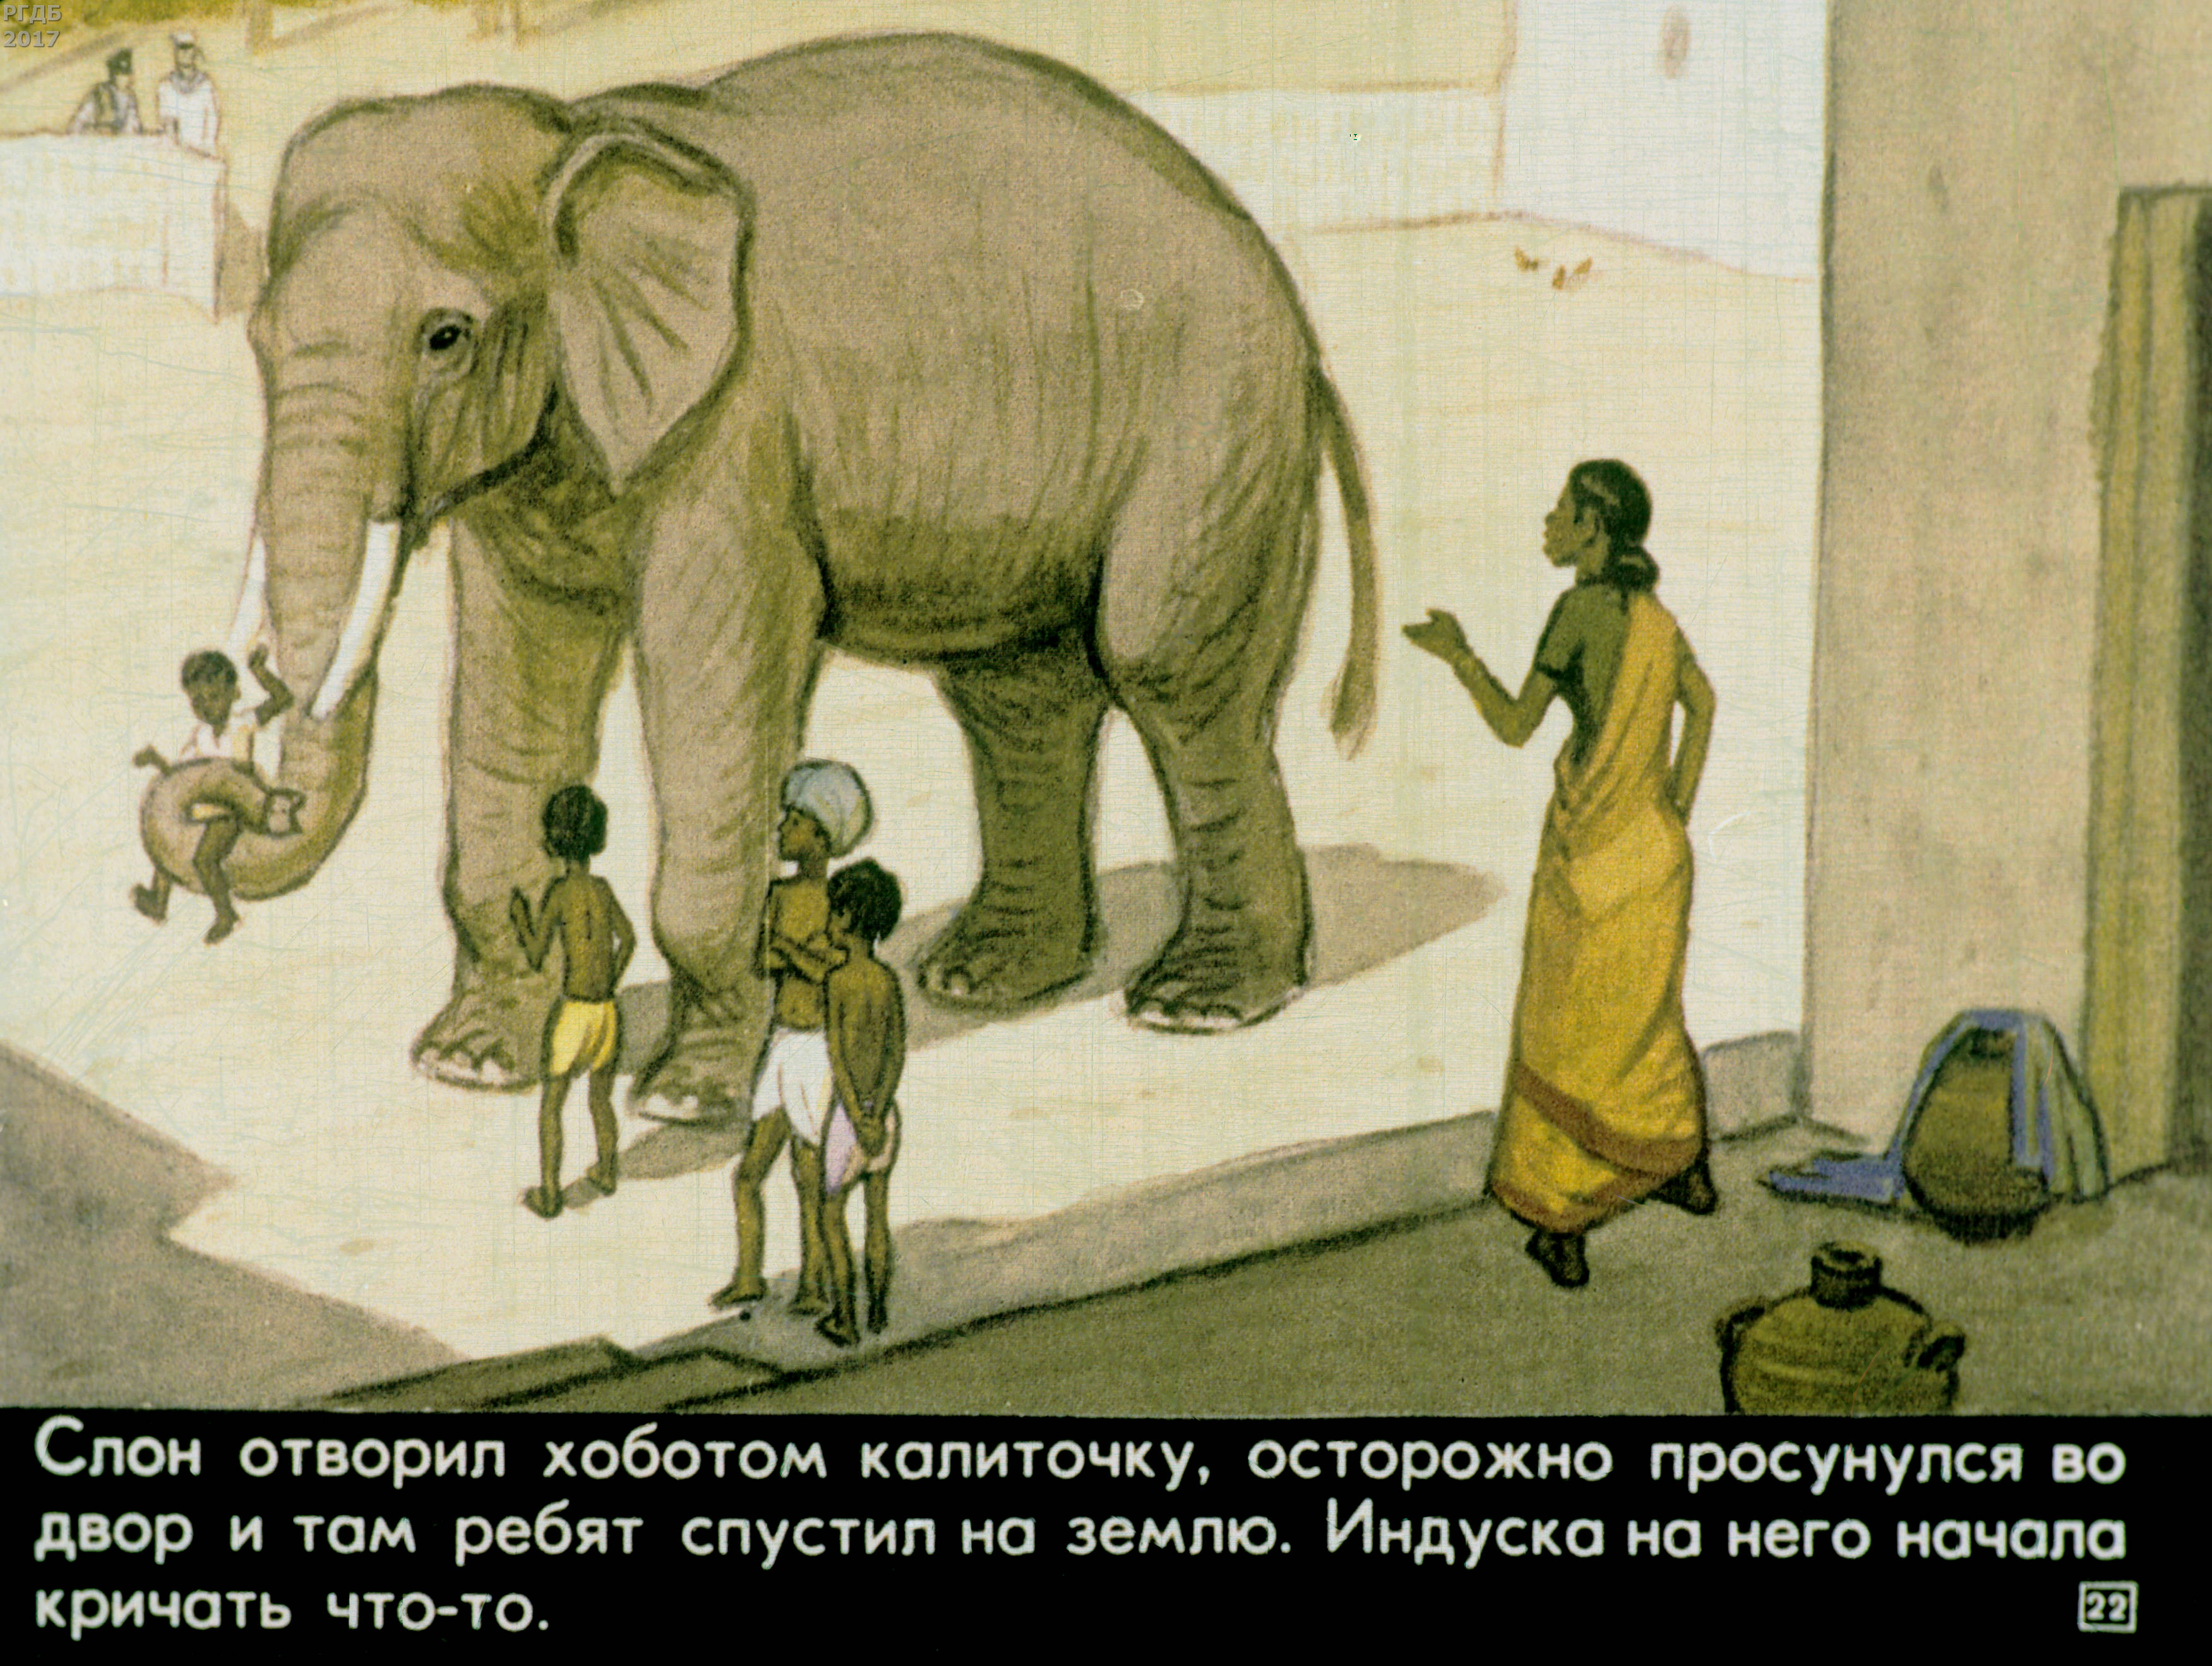 Иллюстрация к рассказу про слона Житков